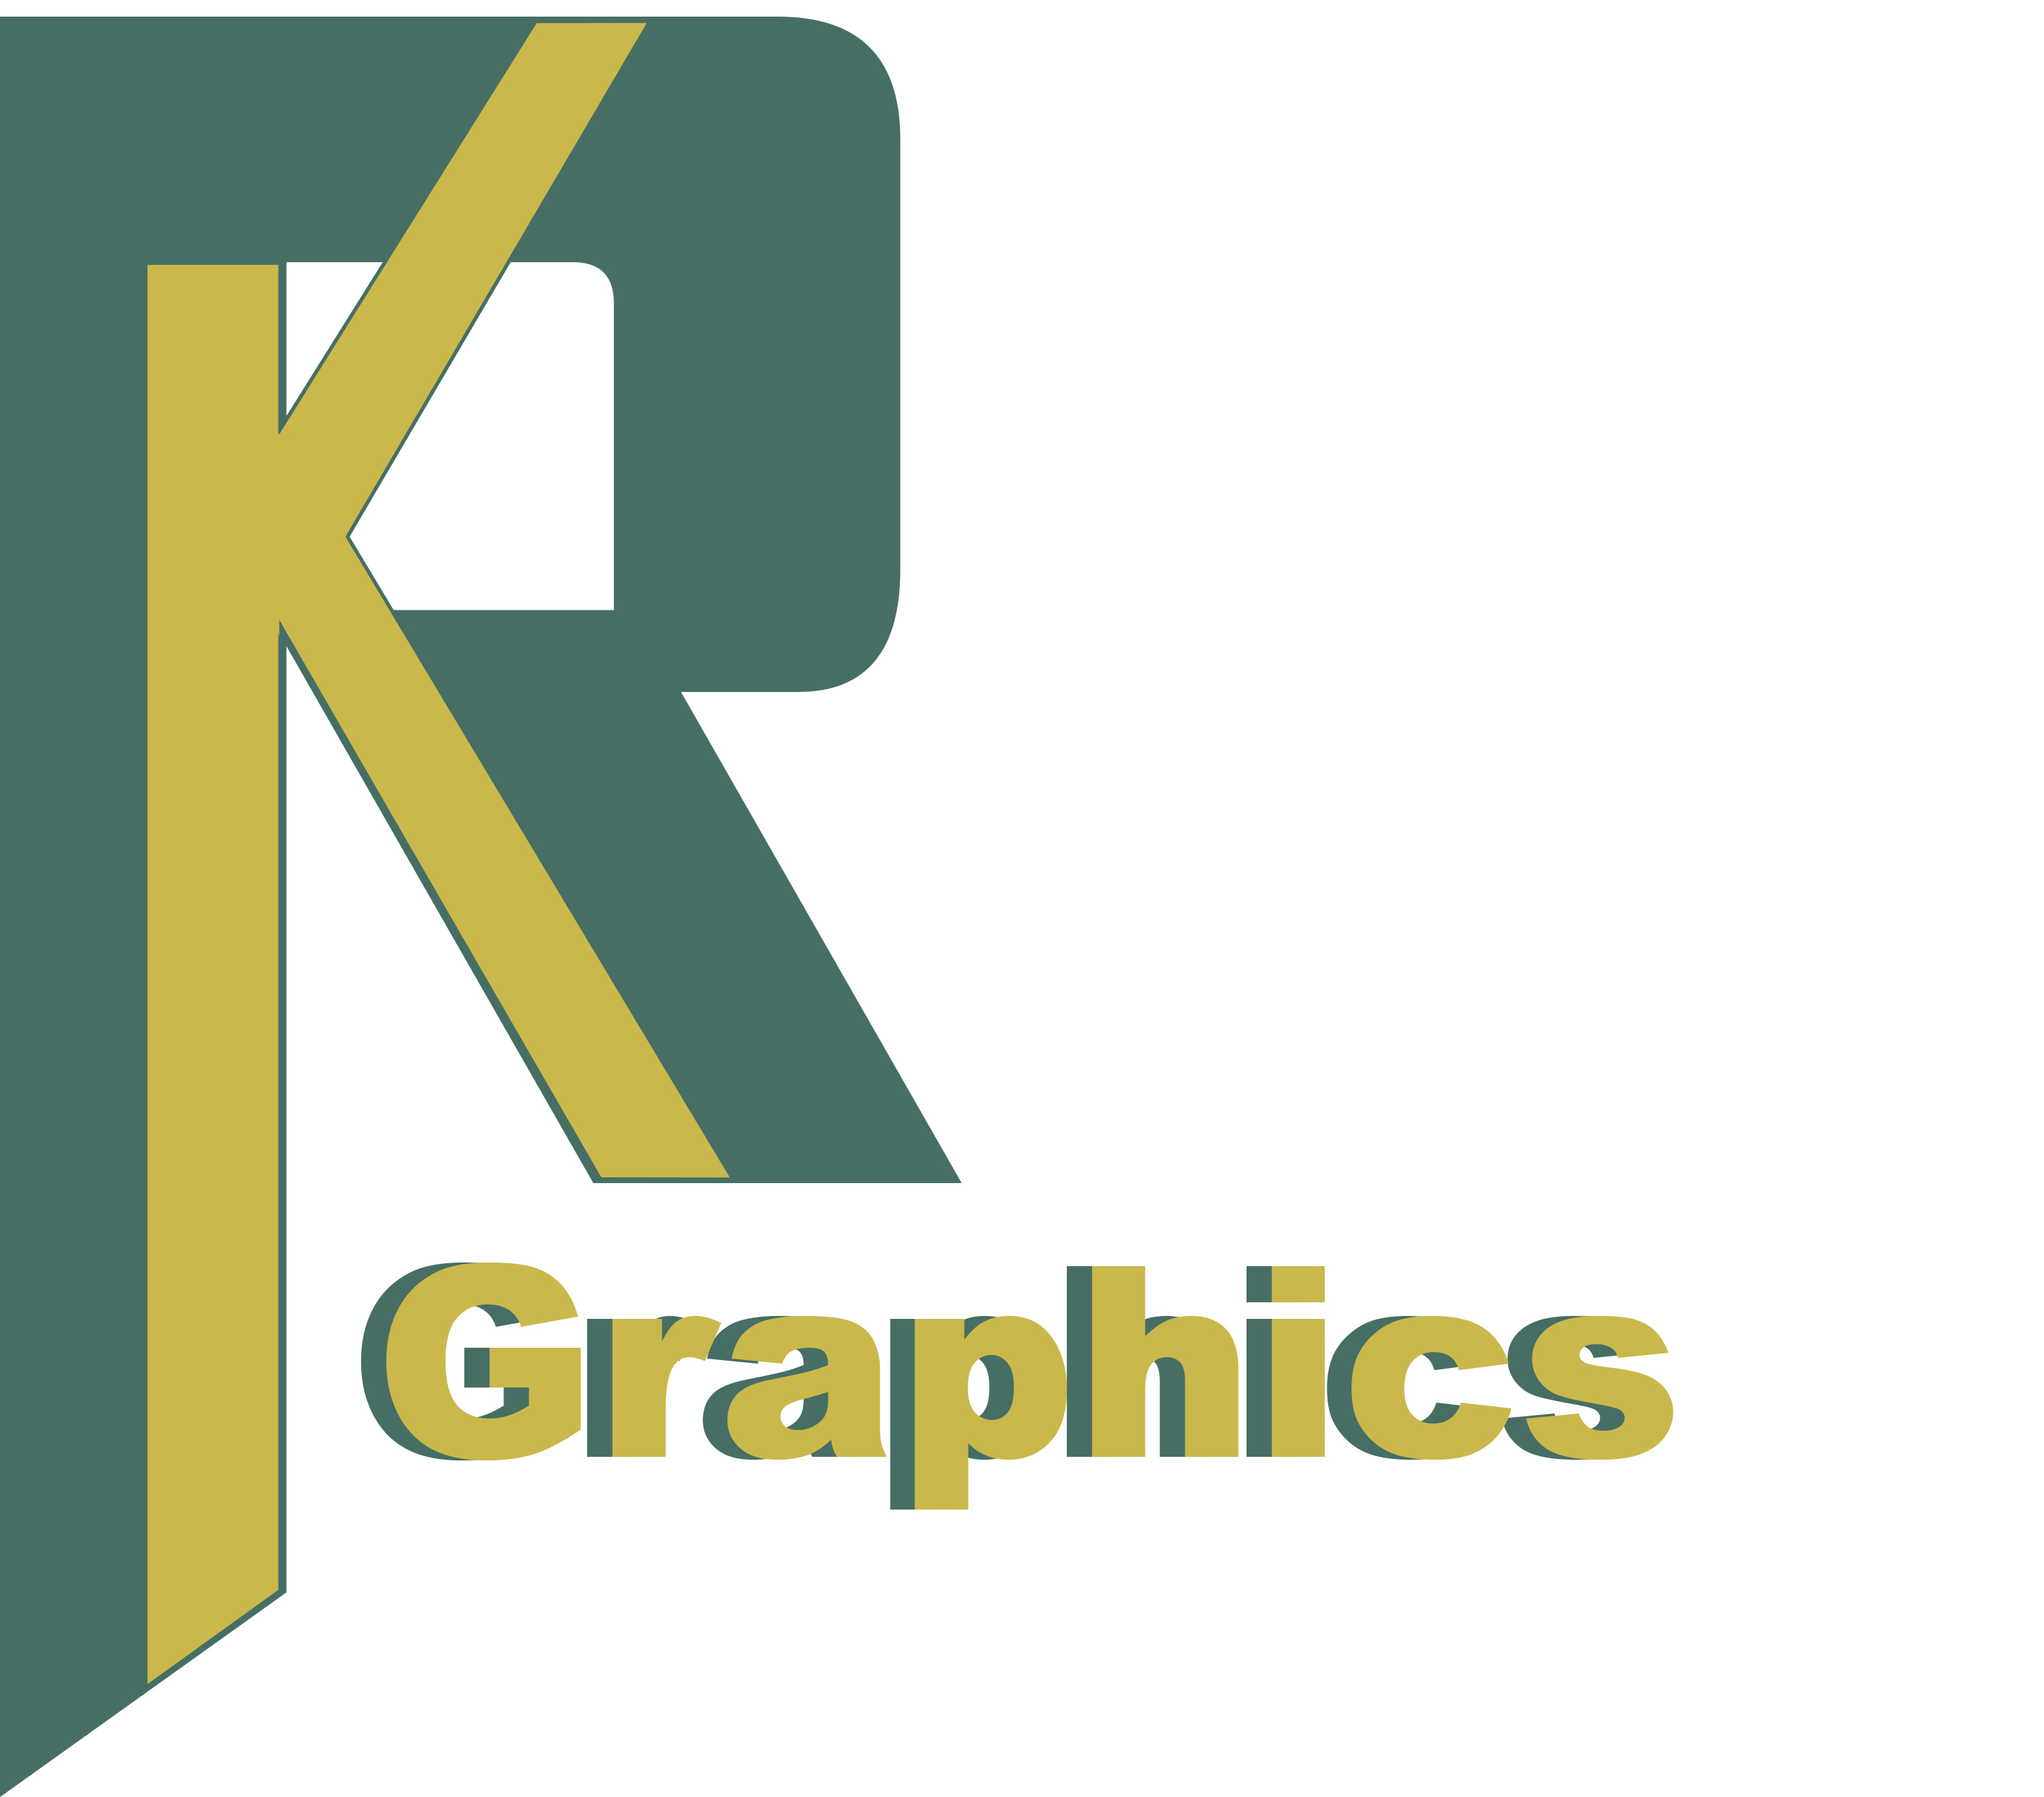 Rk Logos